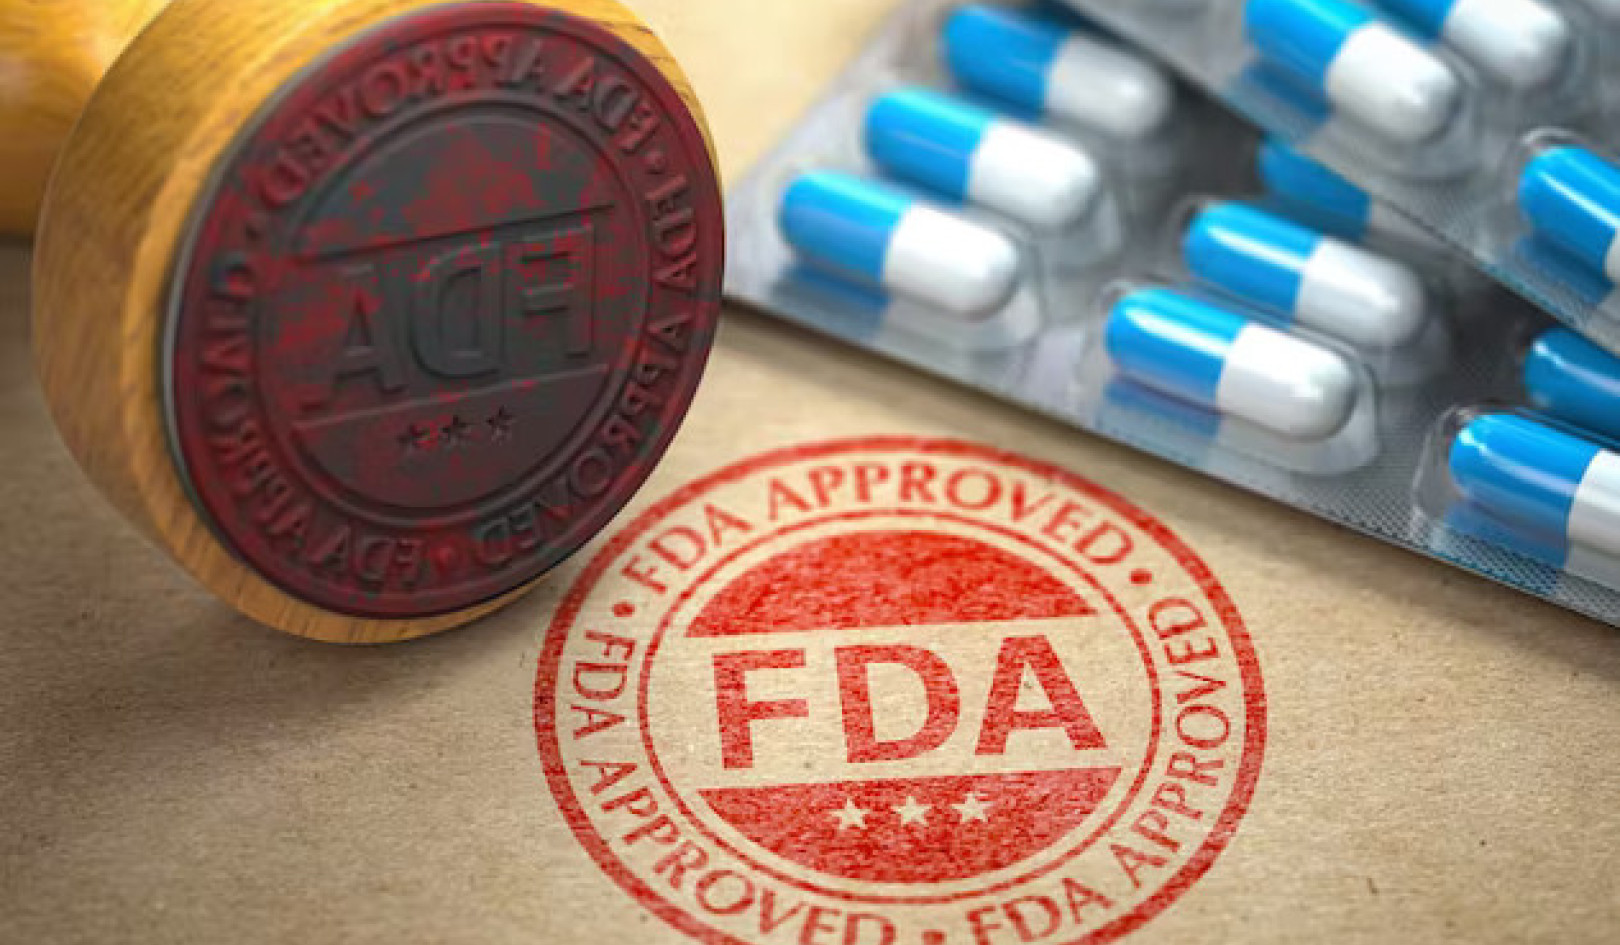 속지 마세요: 광고에서 '특허'와 'FDA 승인'의 실제 의미